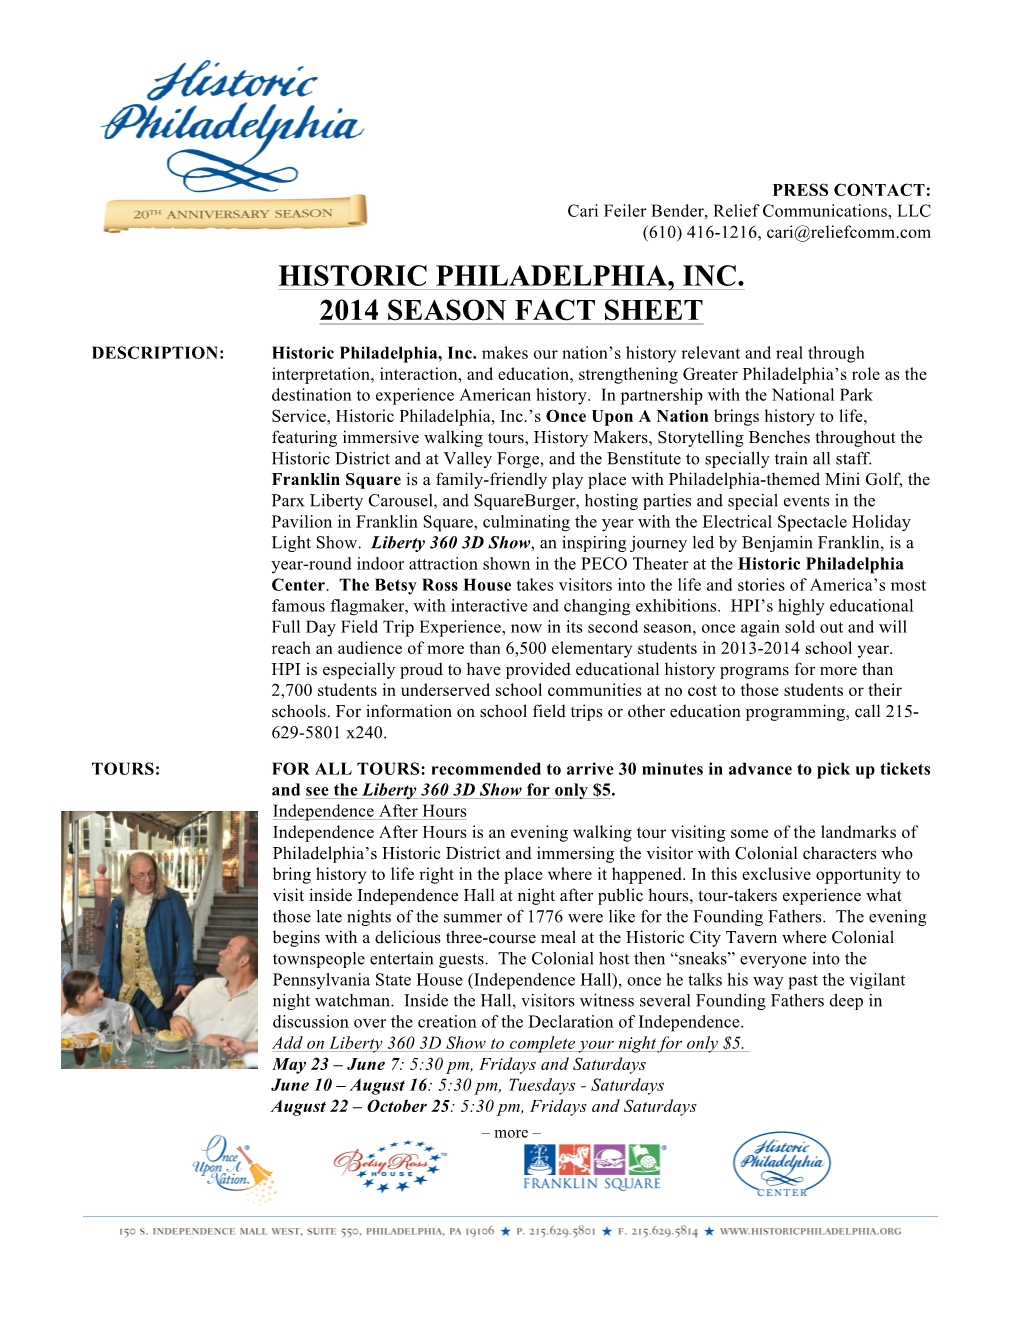 Historic Philadelphia, Inc. 2014 Season Fact Sheet